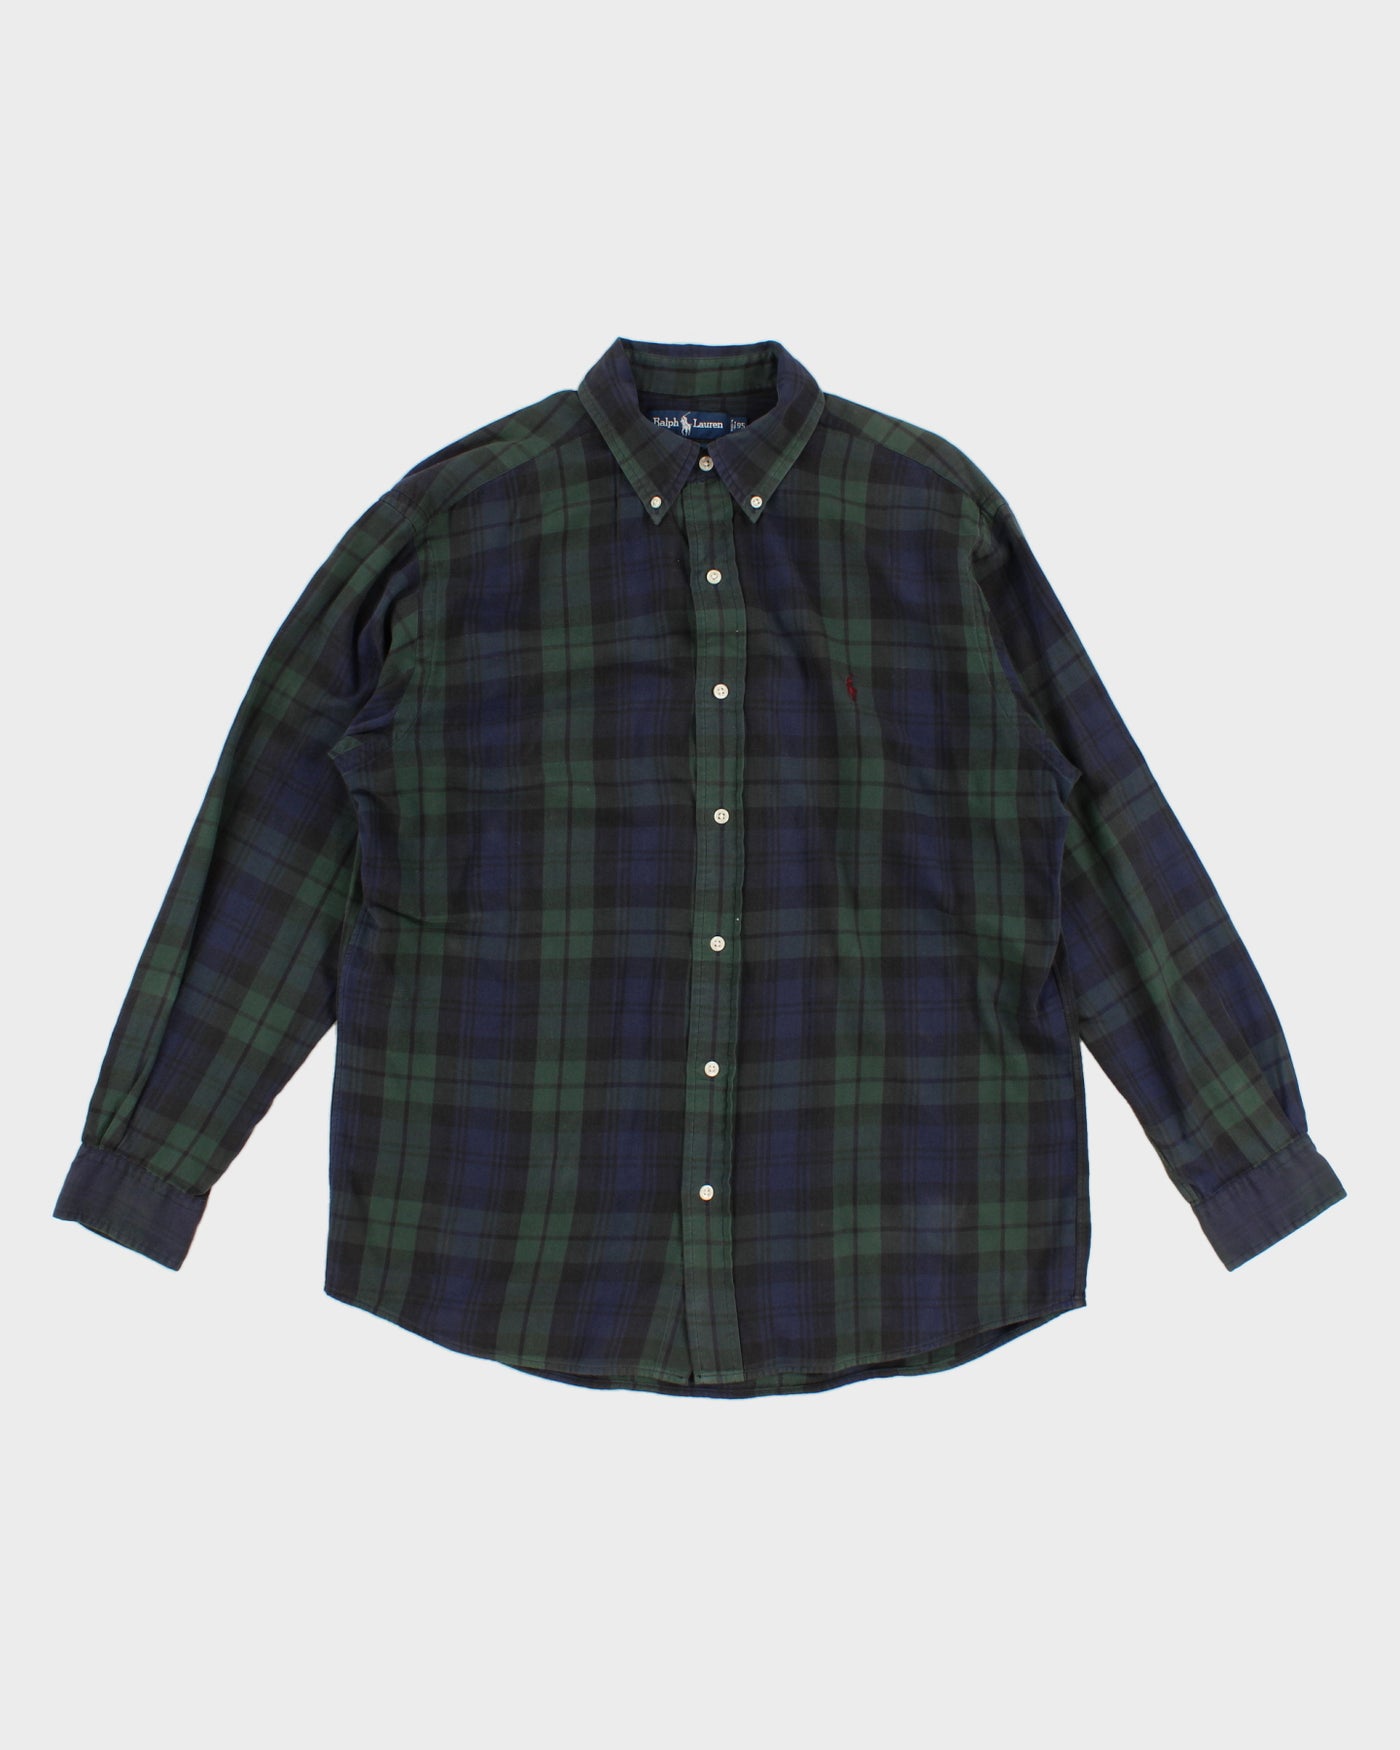 Green and Navy Check Ralph Lauren Shirt - L